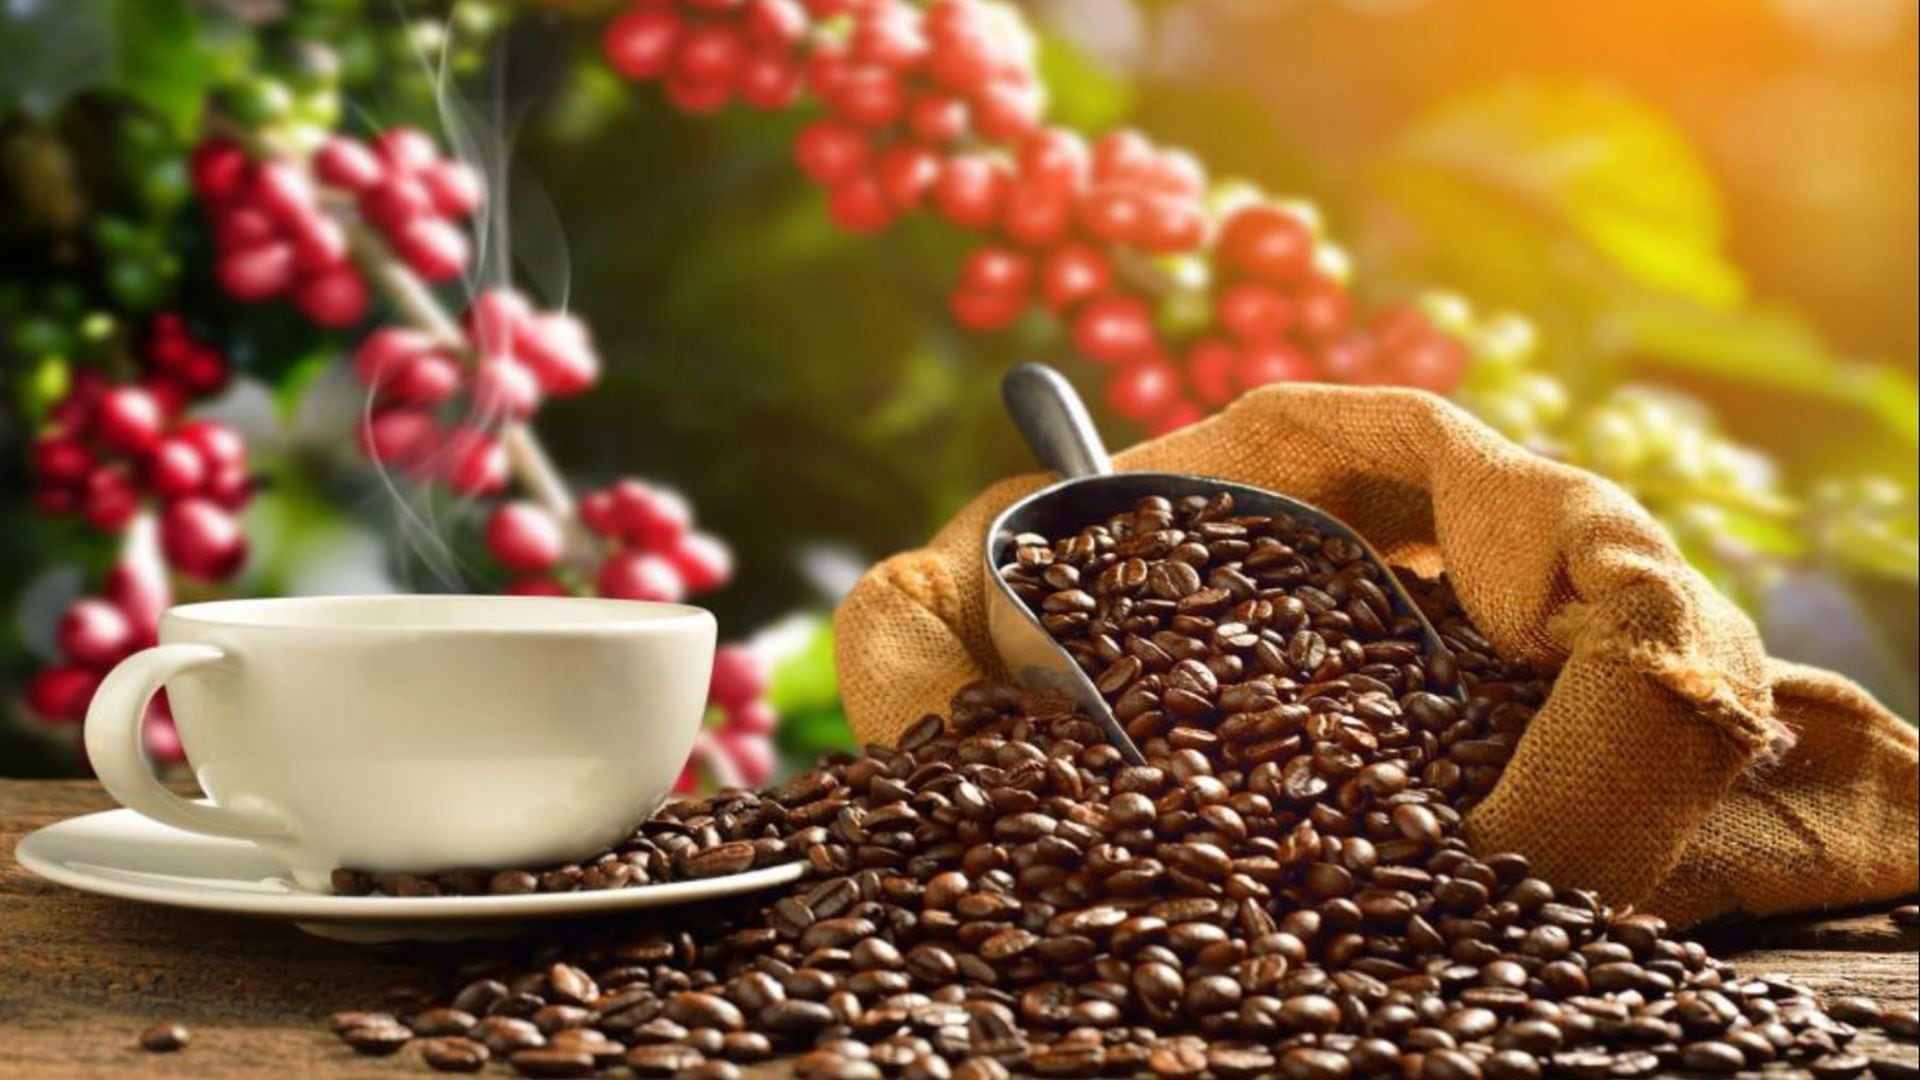 Adaptarse al cambio con el paso de los años, cómo el café puede influir en nuestras rutinas y hábitos de sueño
(Andina)